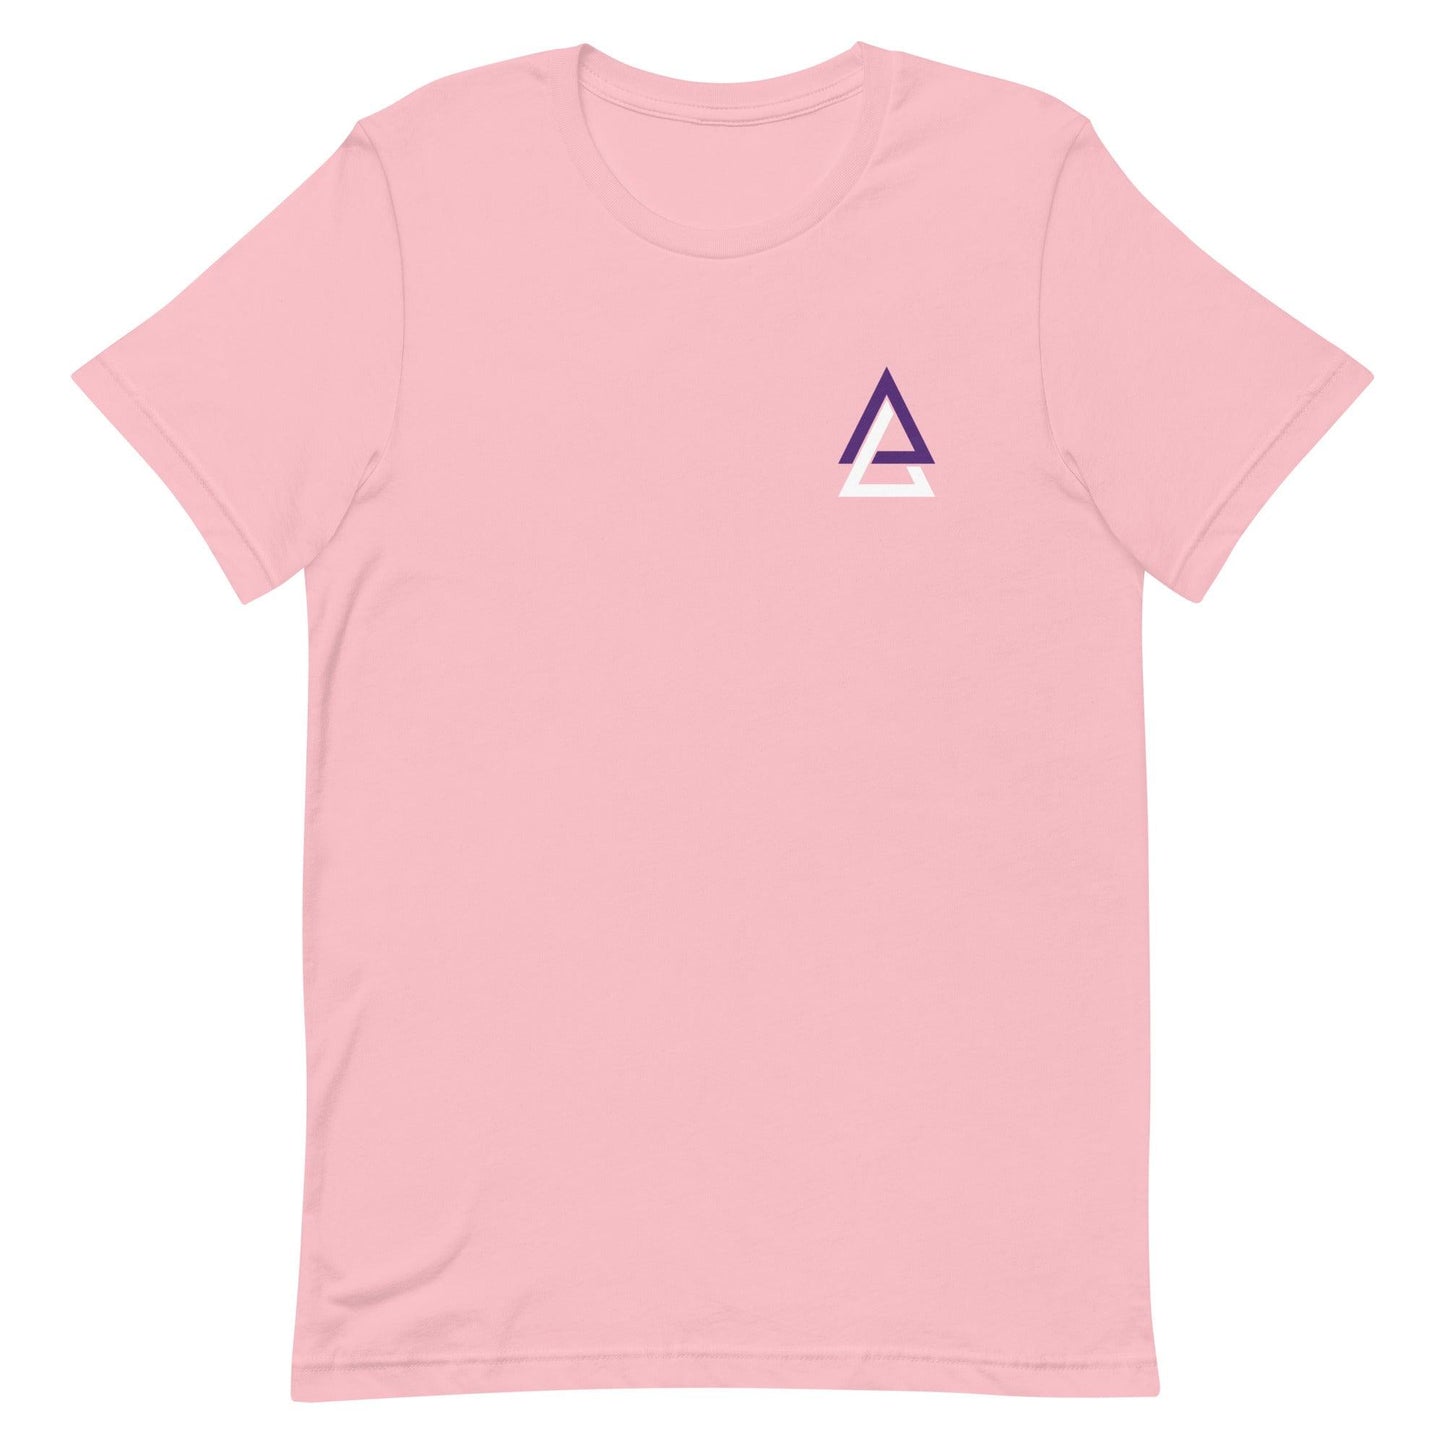 Ahjany Lee "Essential" t-shirt - Fan Arch